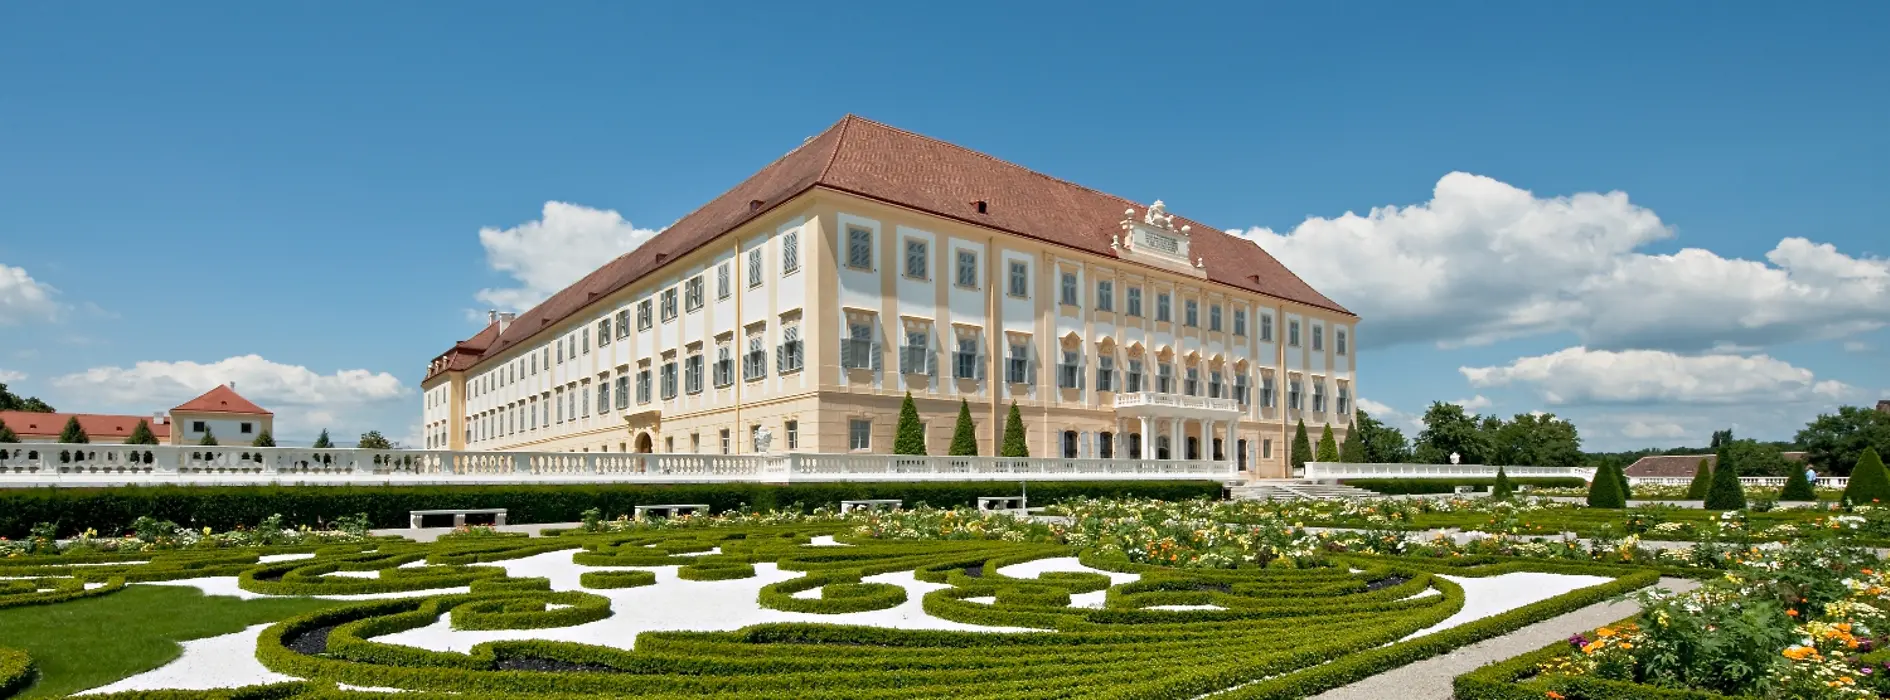 Vista laterale dello Schloss Hof